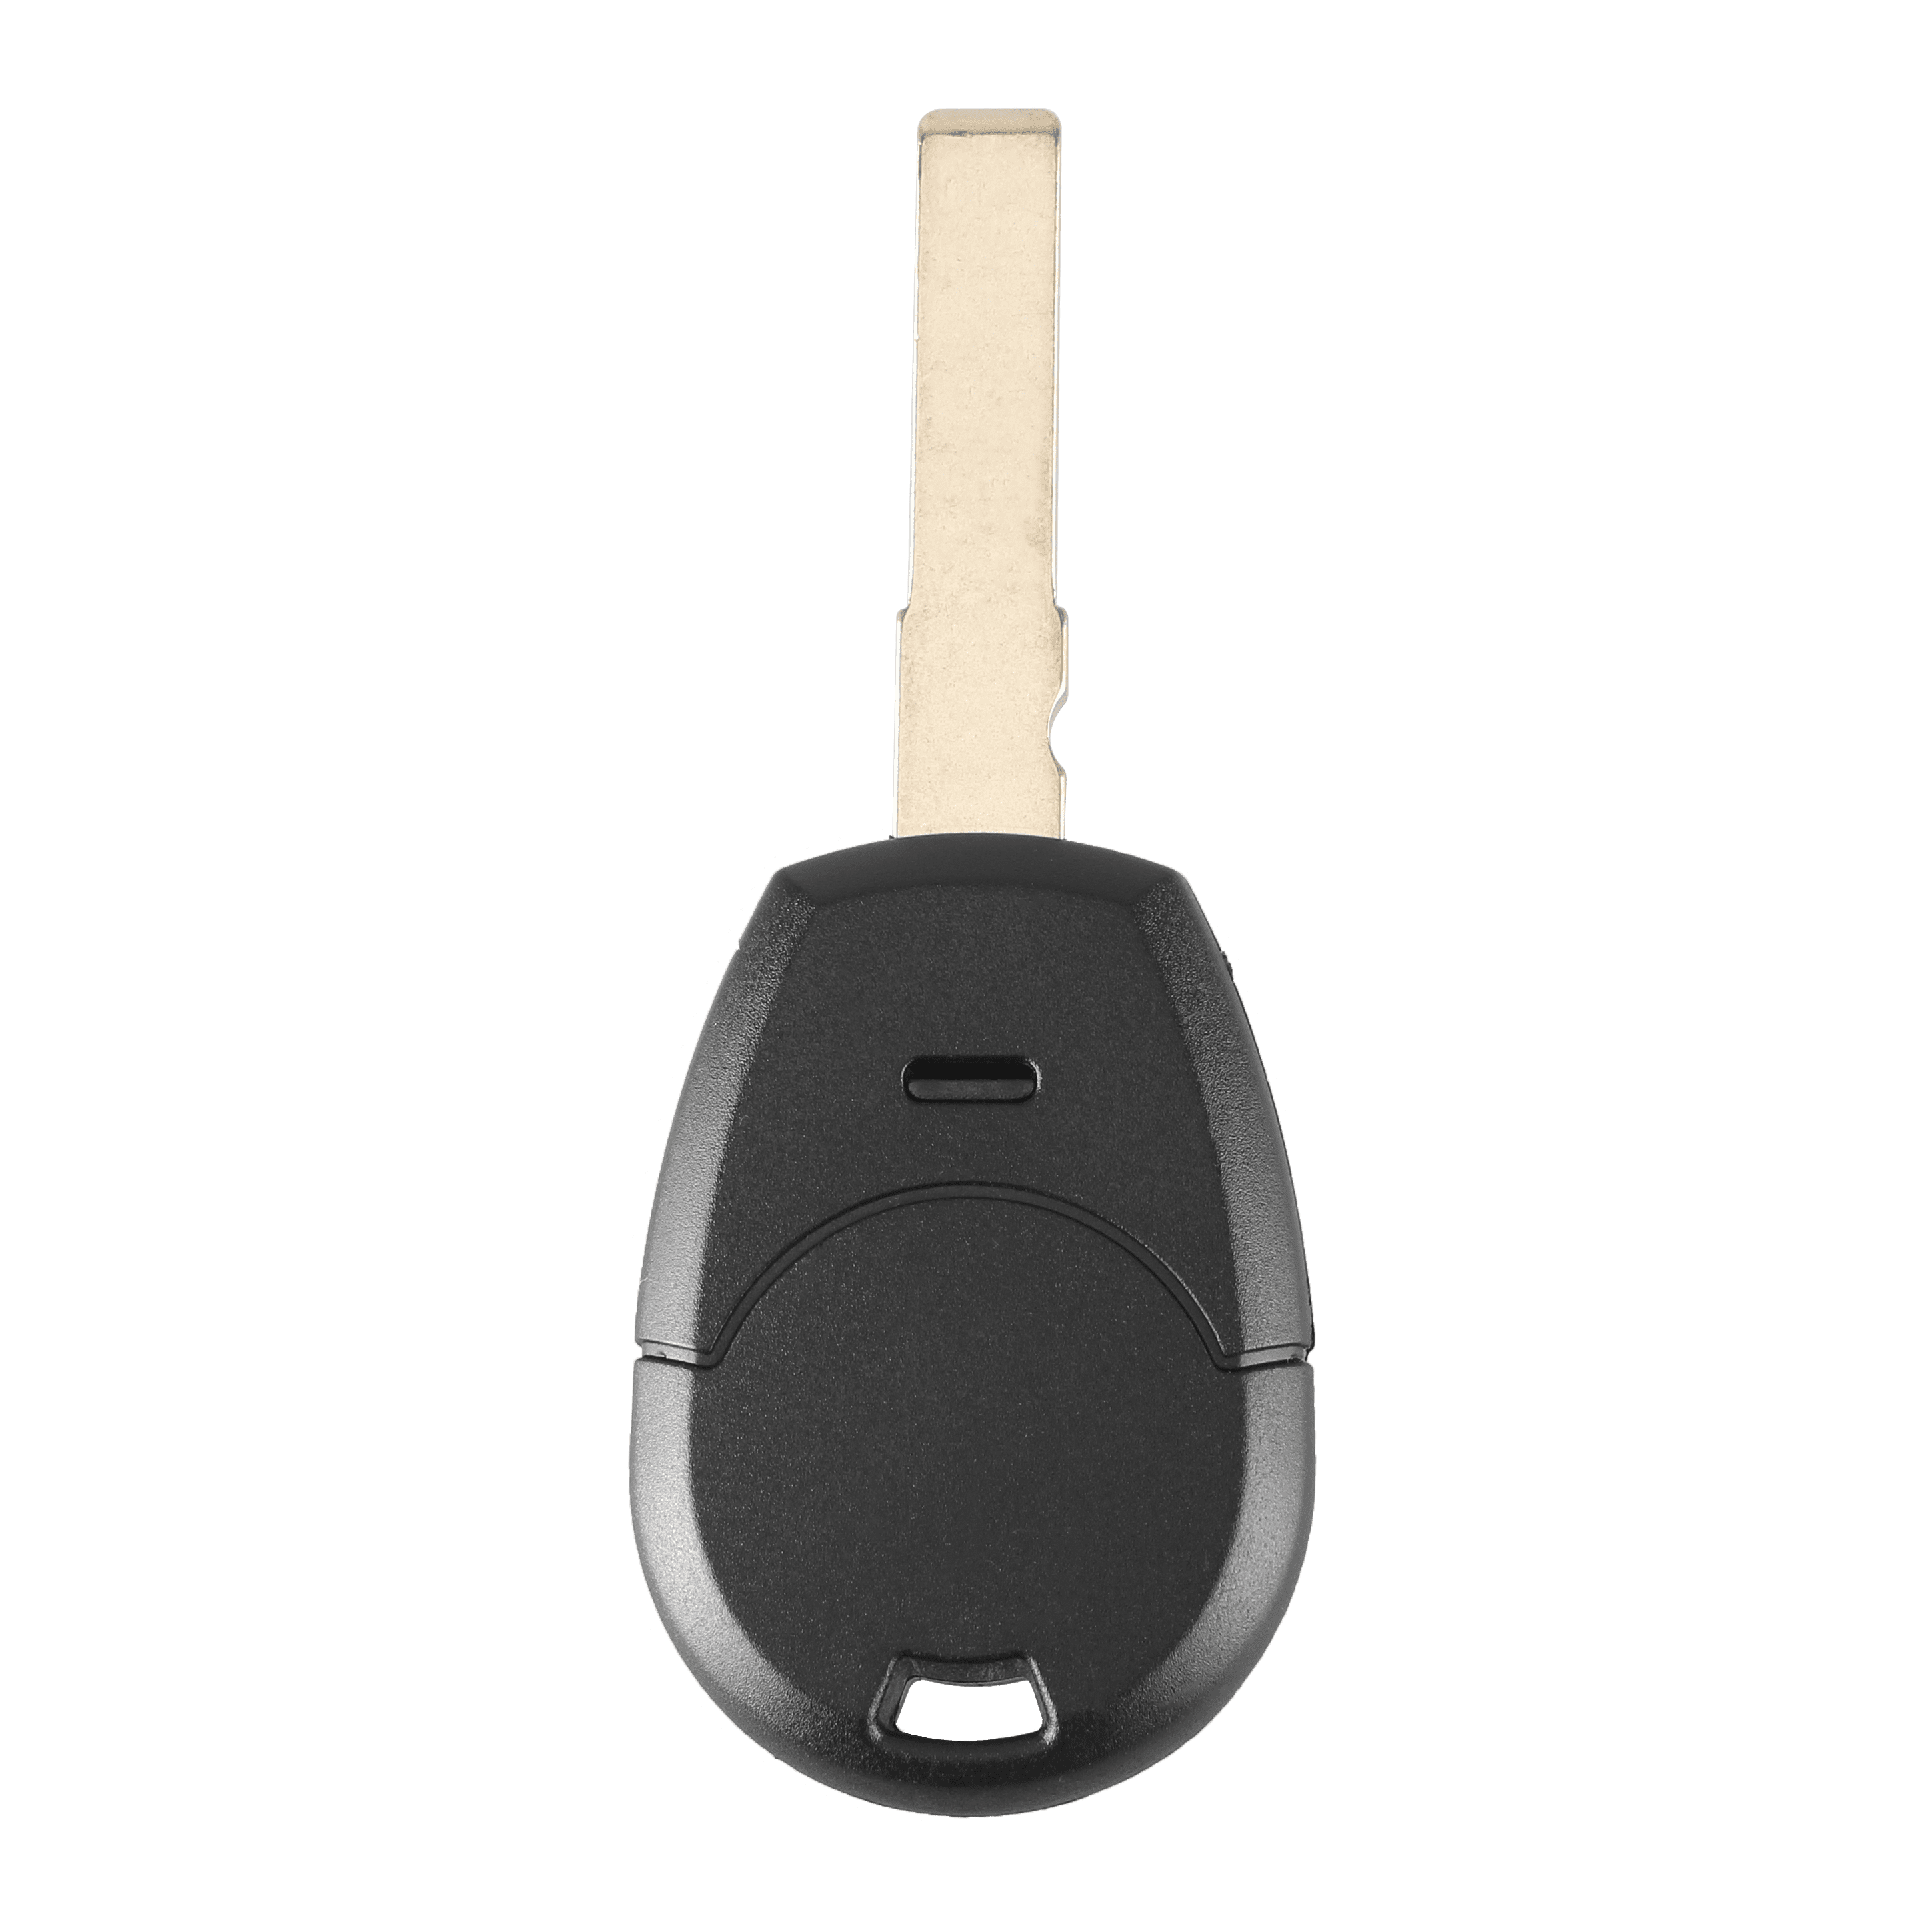 Fekete színű, 2 gombos Fiat kulcs, kulcsház.